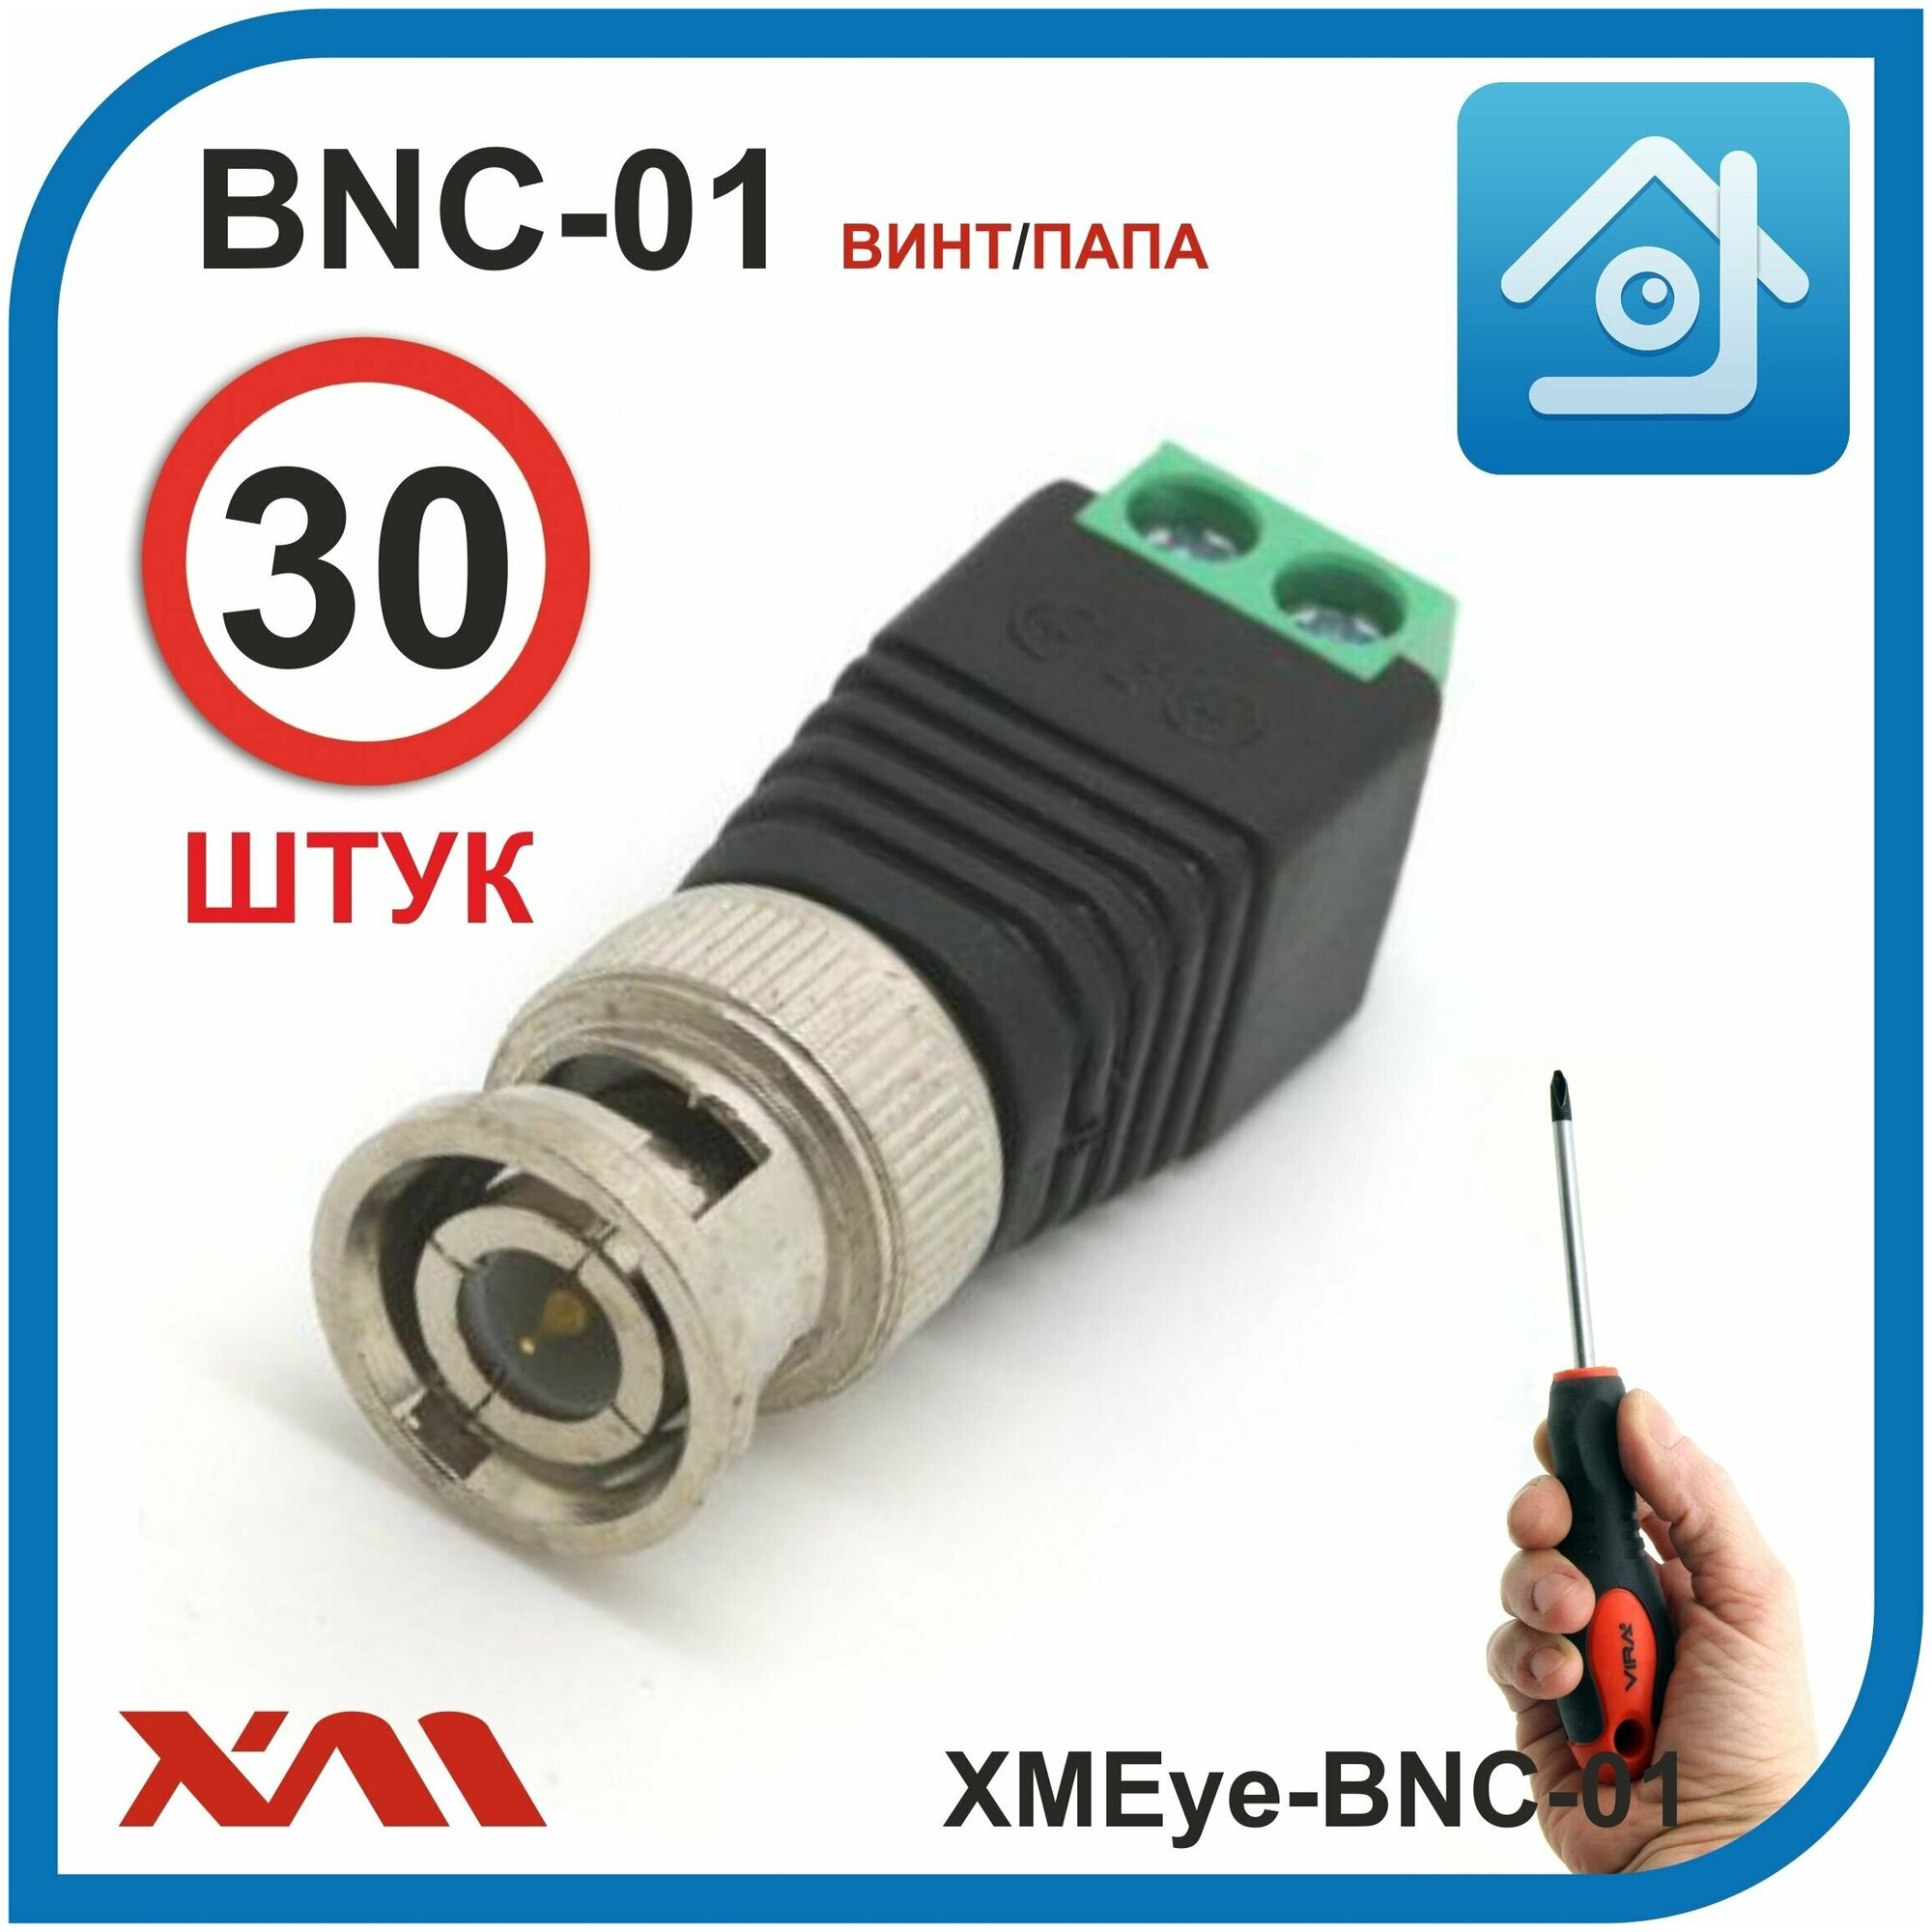 BNC разъем под отвертку для видеокамер XMEye-BNC-01 (винт/папа) комплект: 30 шт.